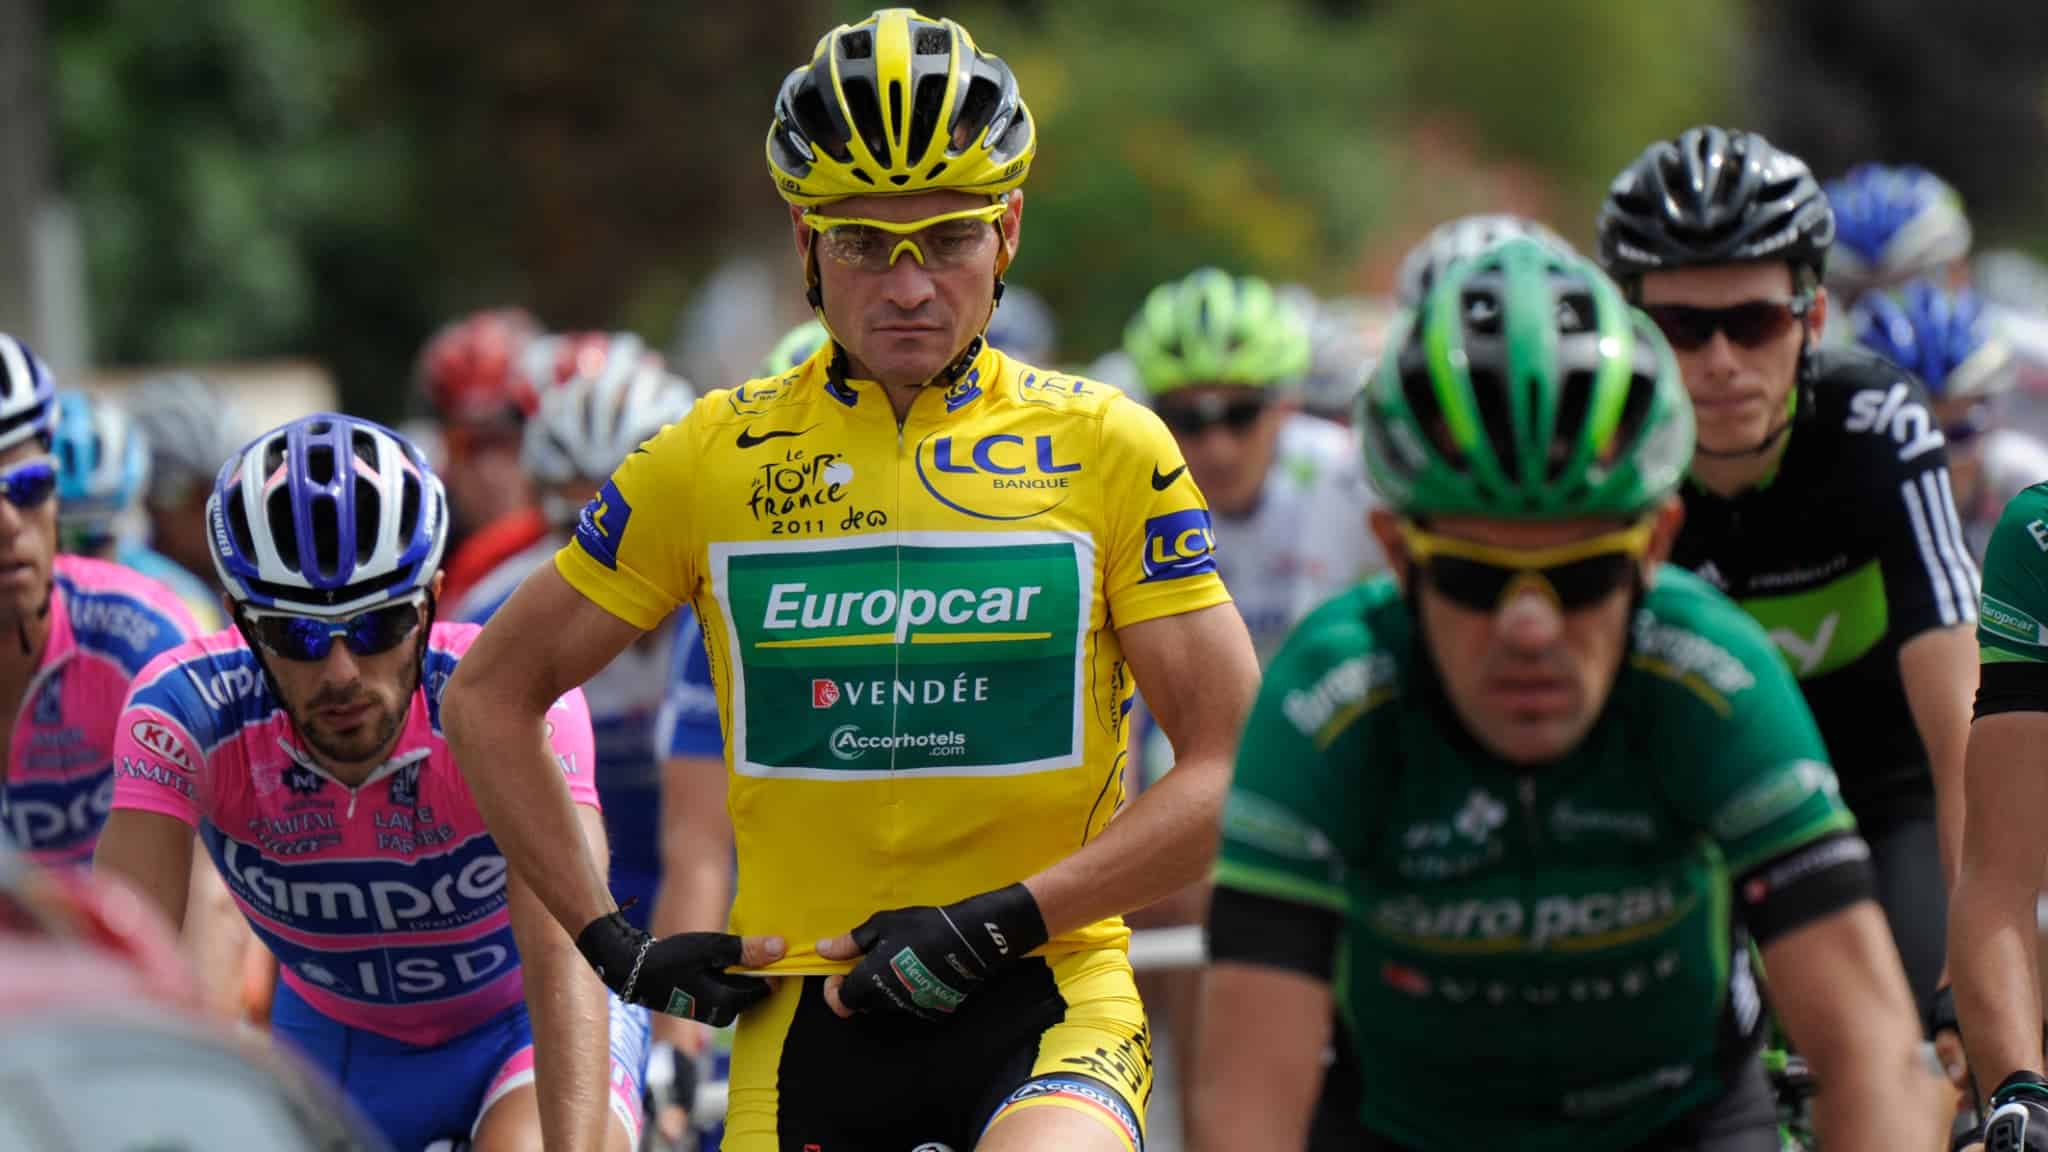 Thomas Voeckler maillot jaune leader tour de france 2011